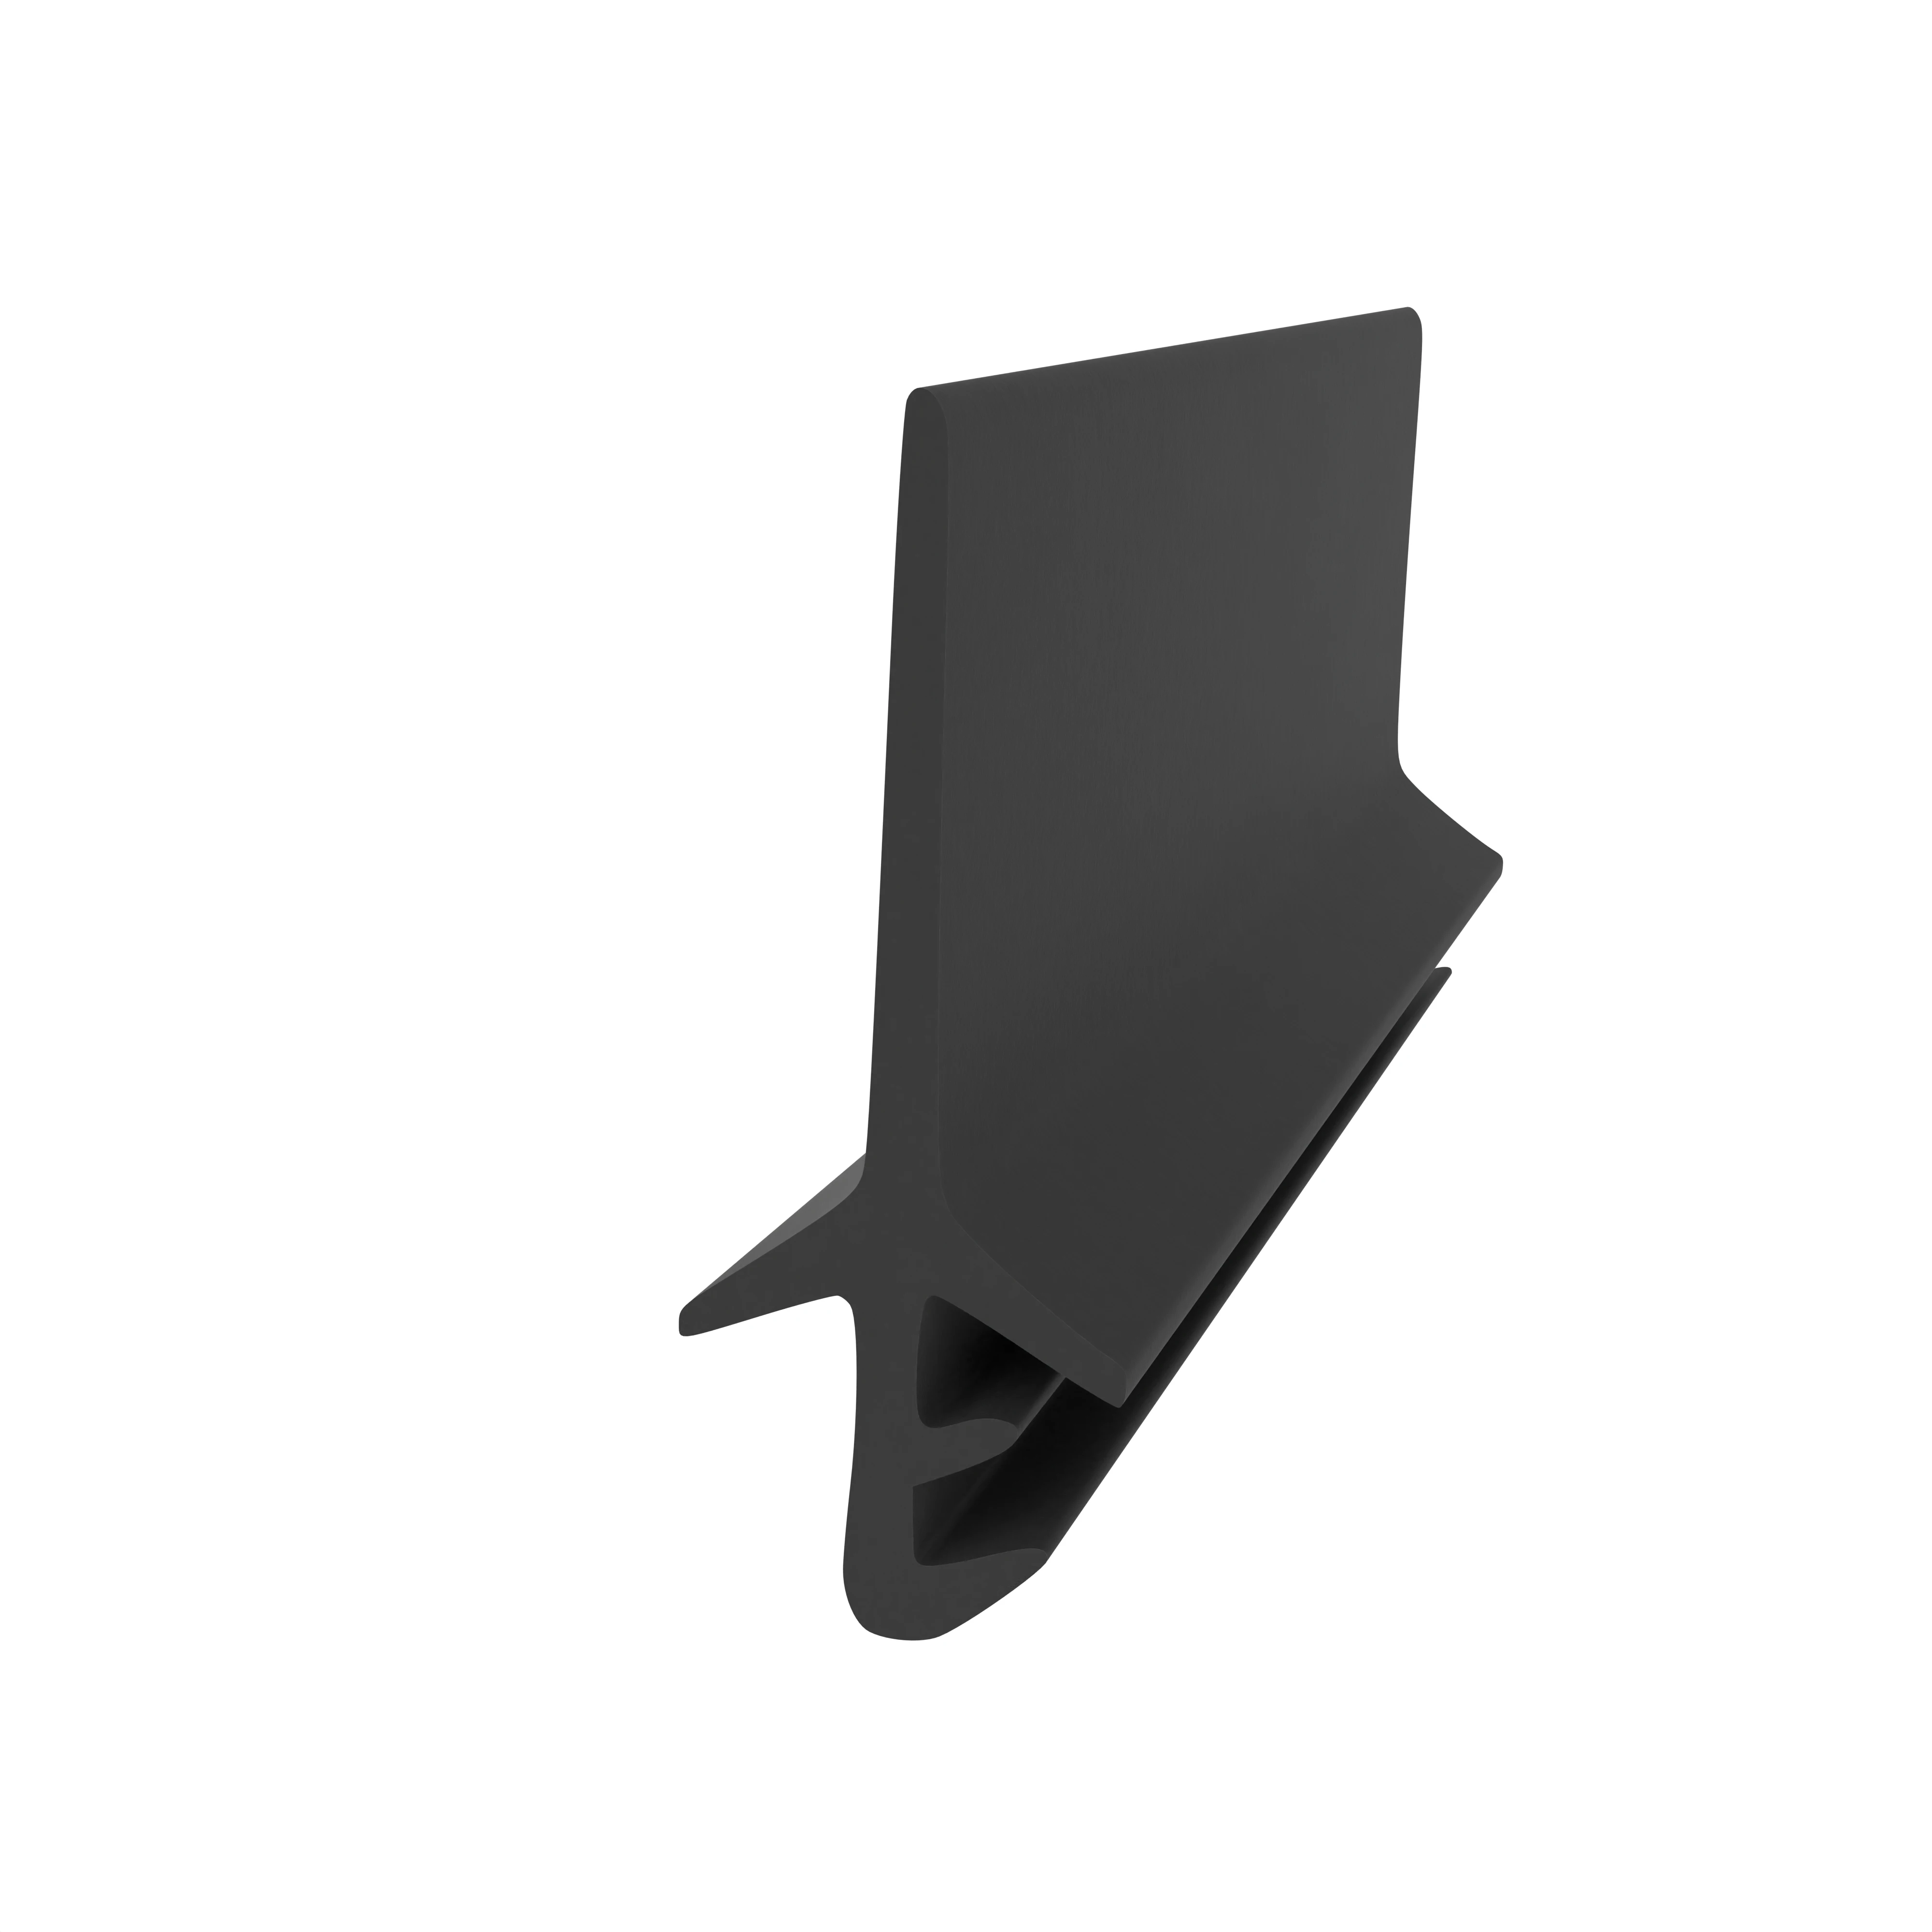 Holzzargendichtung für Zimmertüren | 3 - 4 mm Nutbreite | Farbe: schwarz